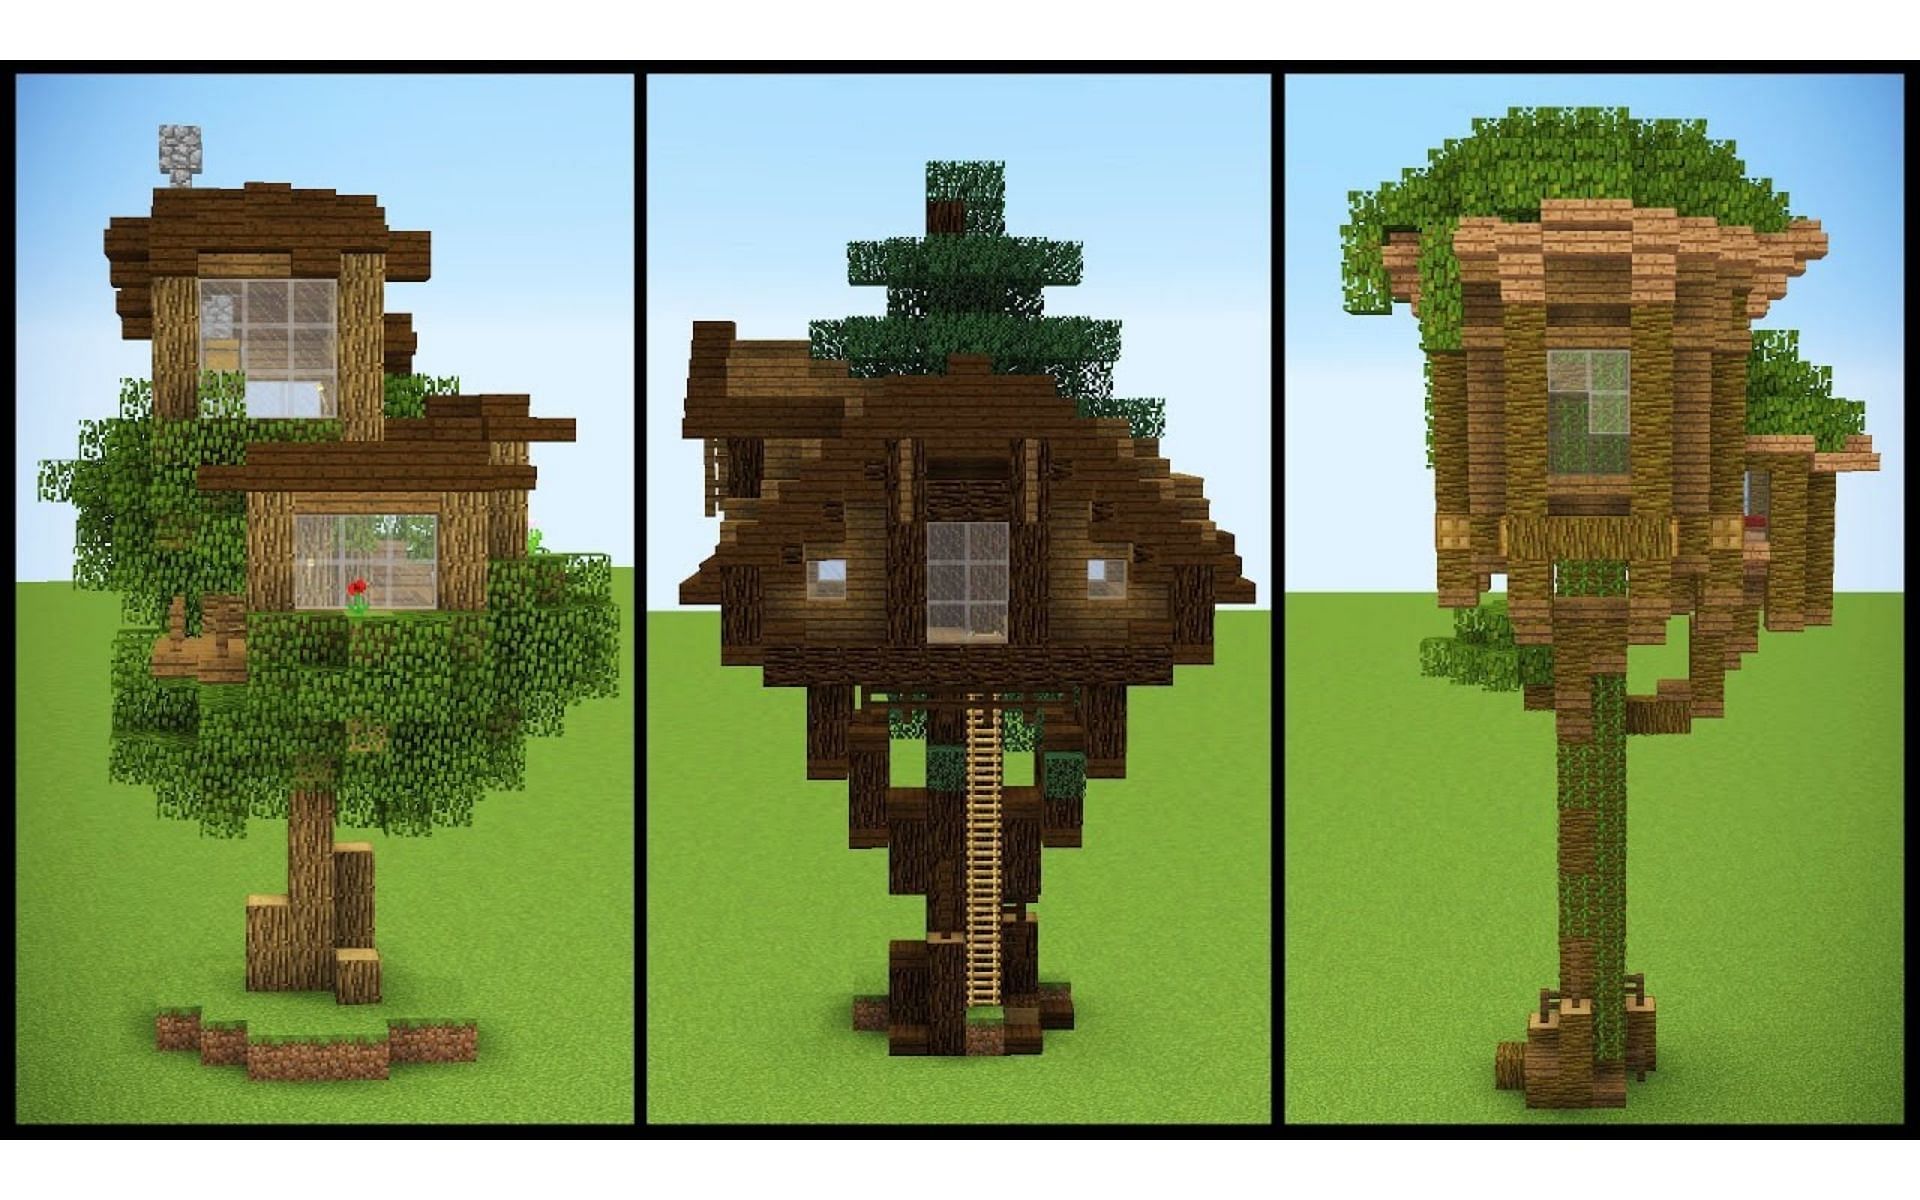 Домик на дереве — это небольшое и универсальное творение, которое может принимать разные формы (Изображение взято с YouTube/Grian)